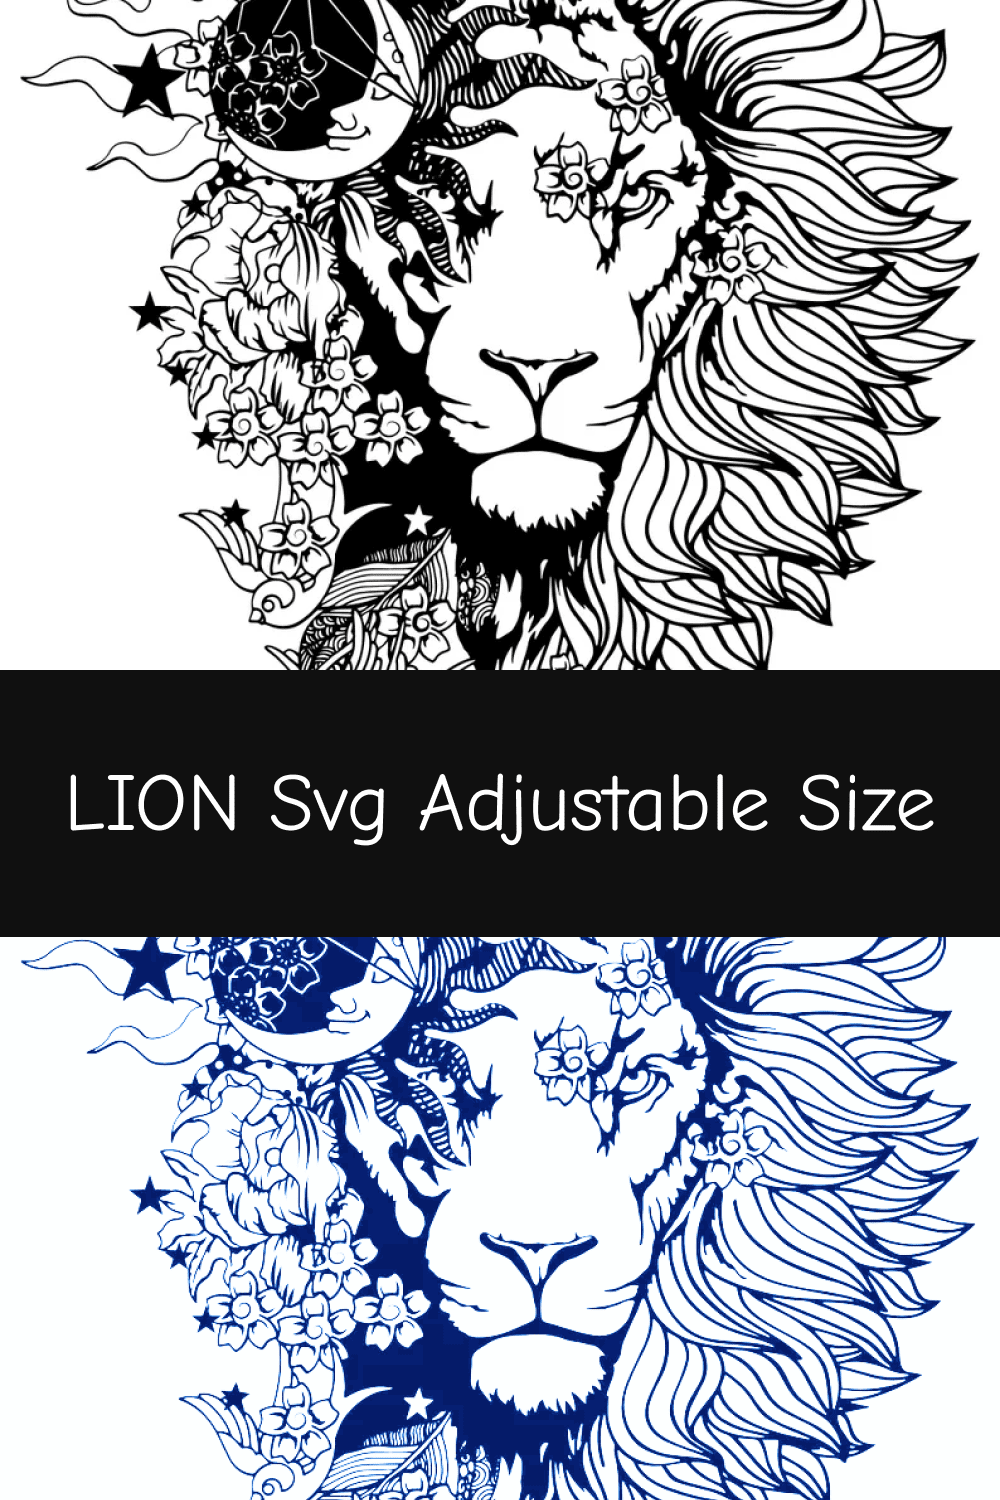 Lion SVG Adjustable Size.